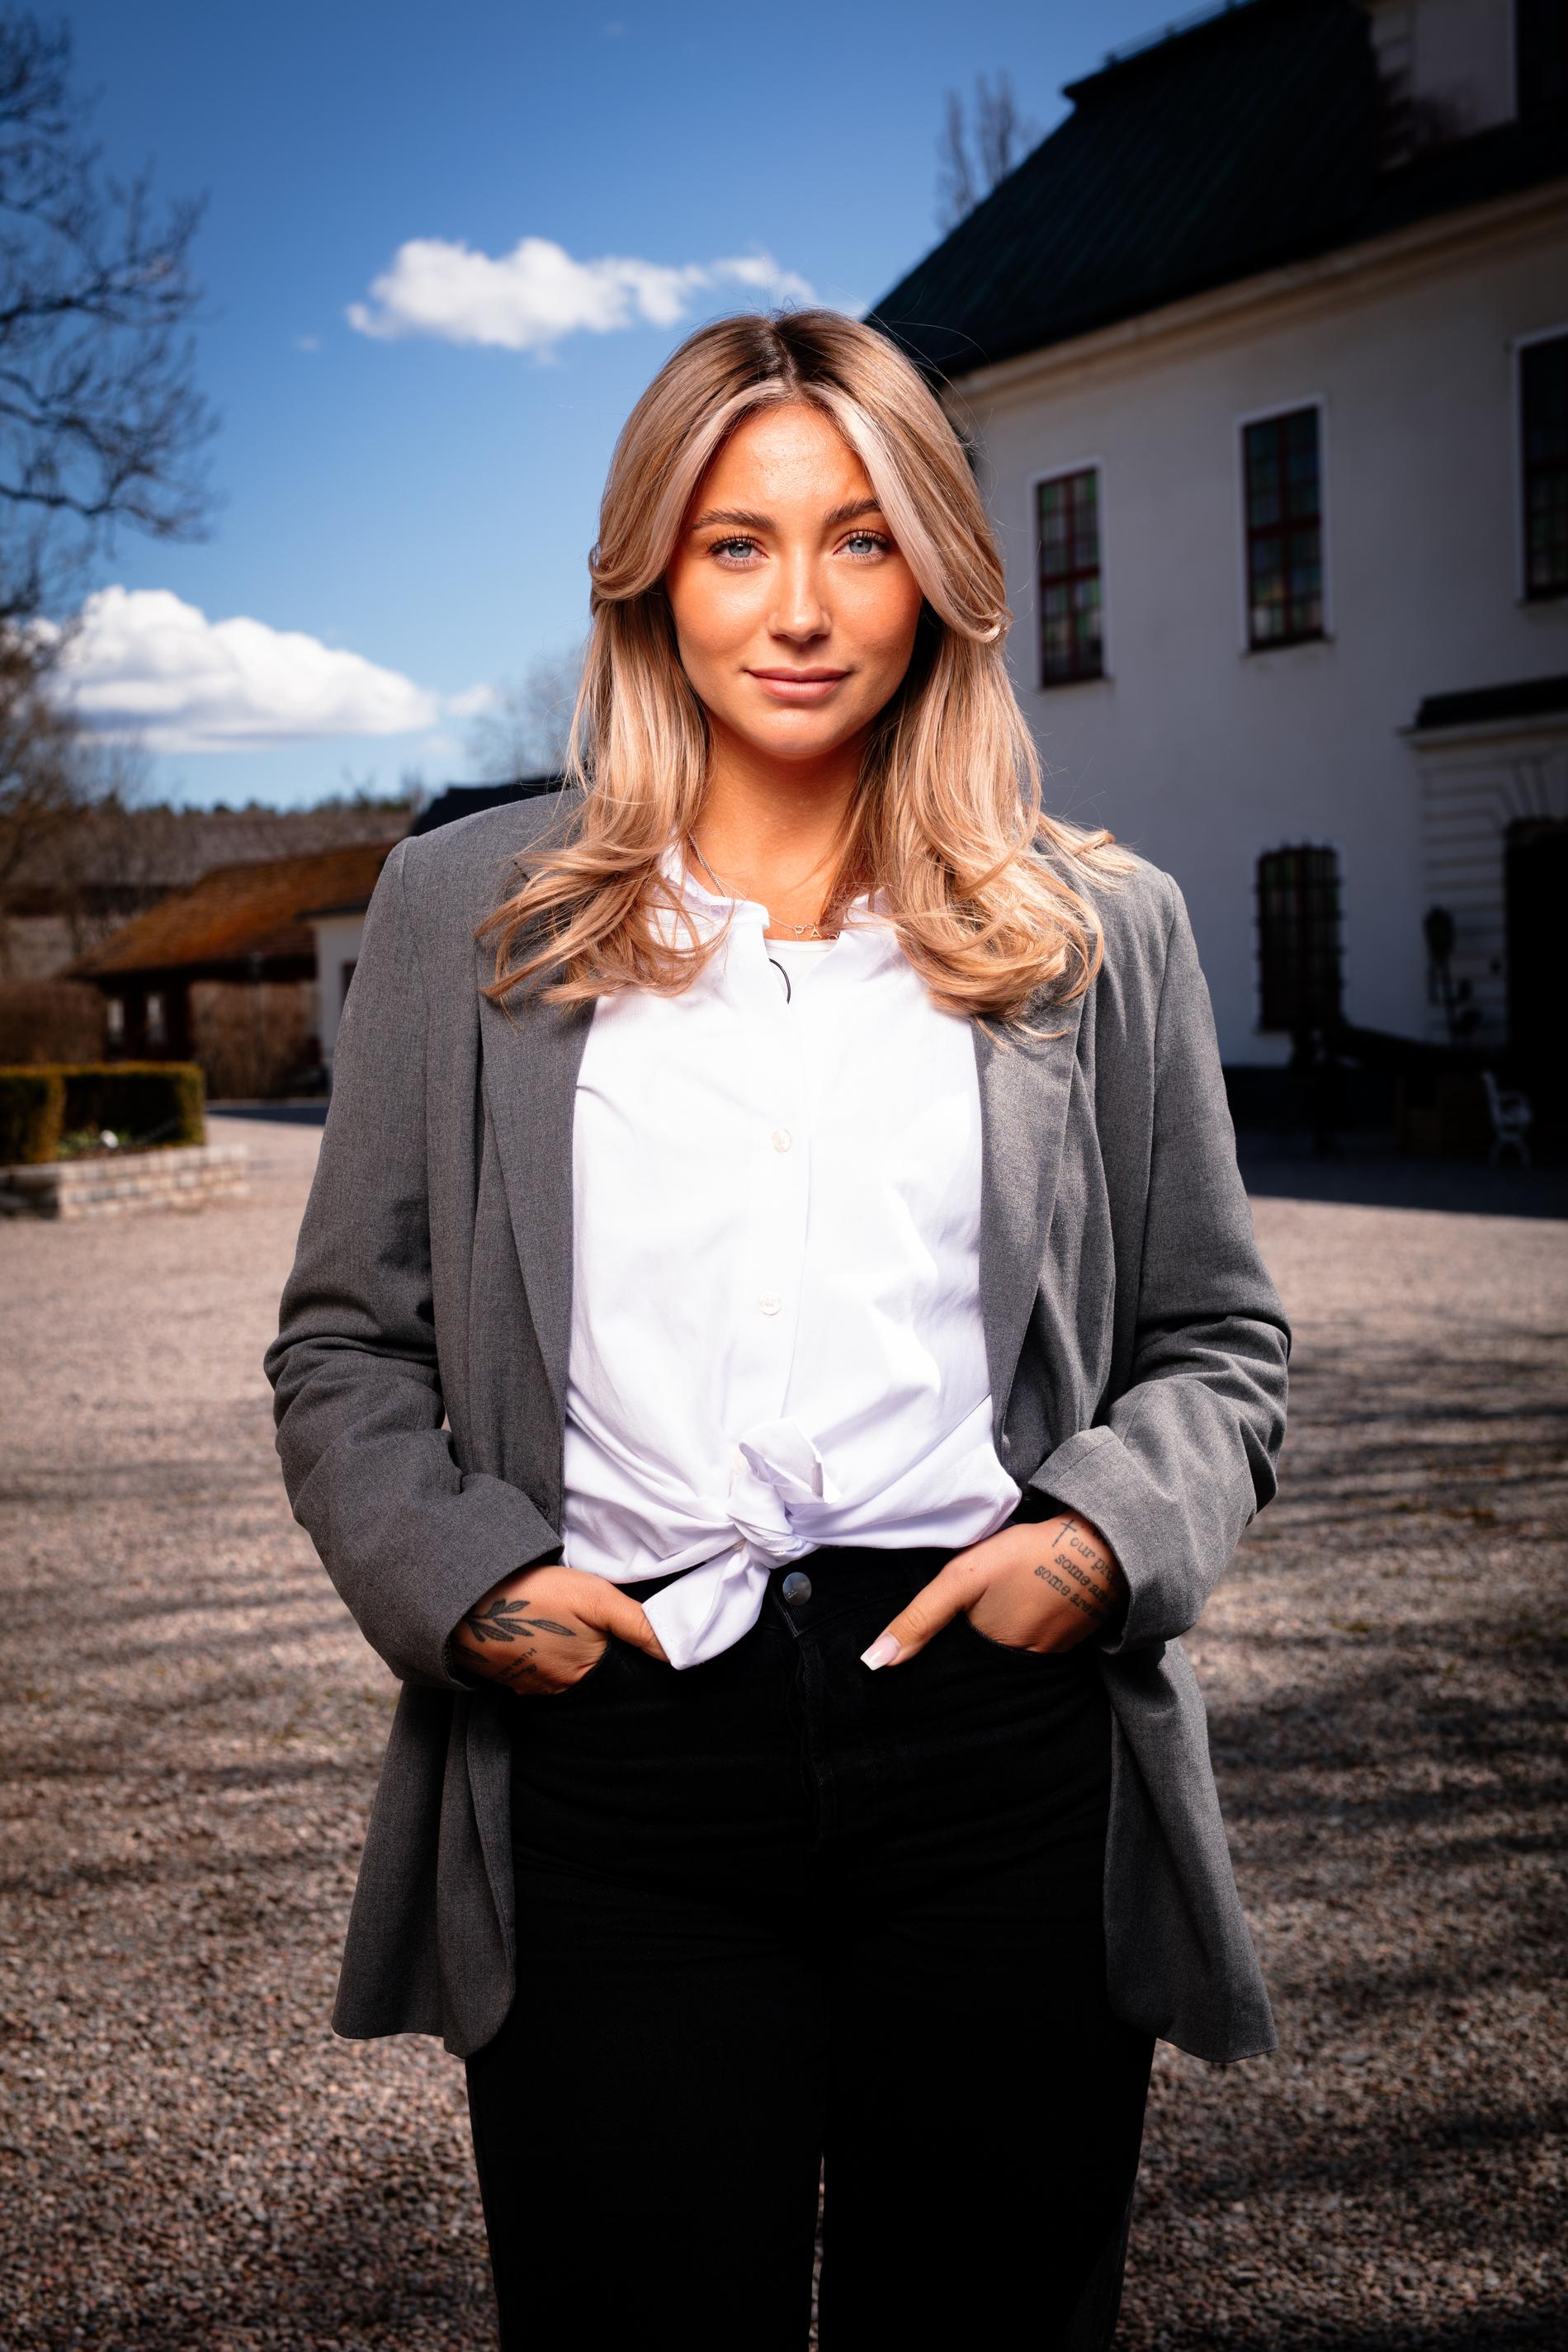 Nicci Hernestig är aktuell i TV4:s nya program ”Förrädarna”, som har premiär till hösten. 